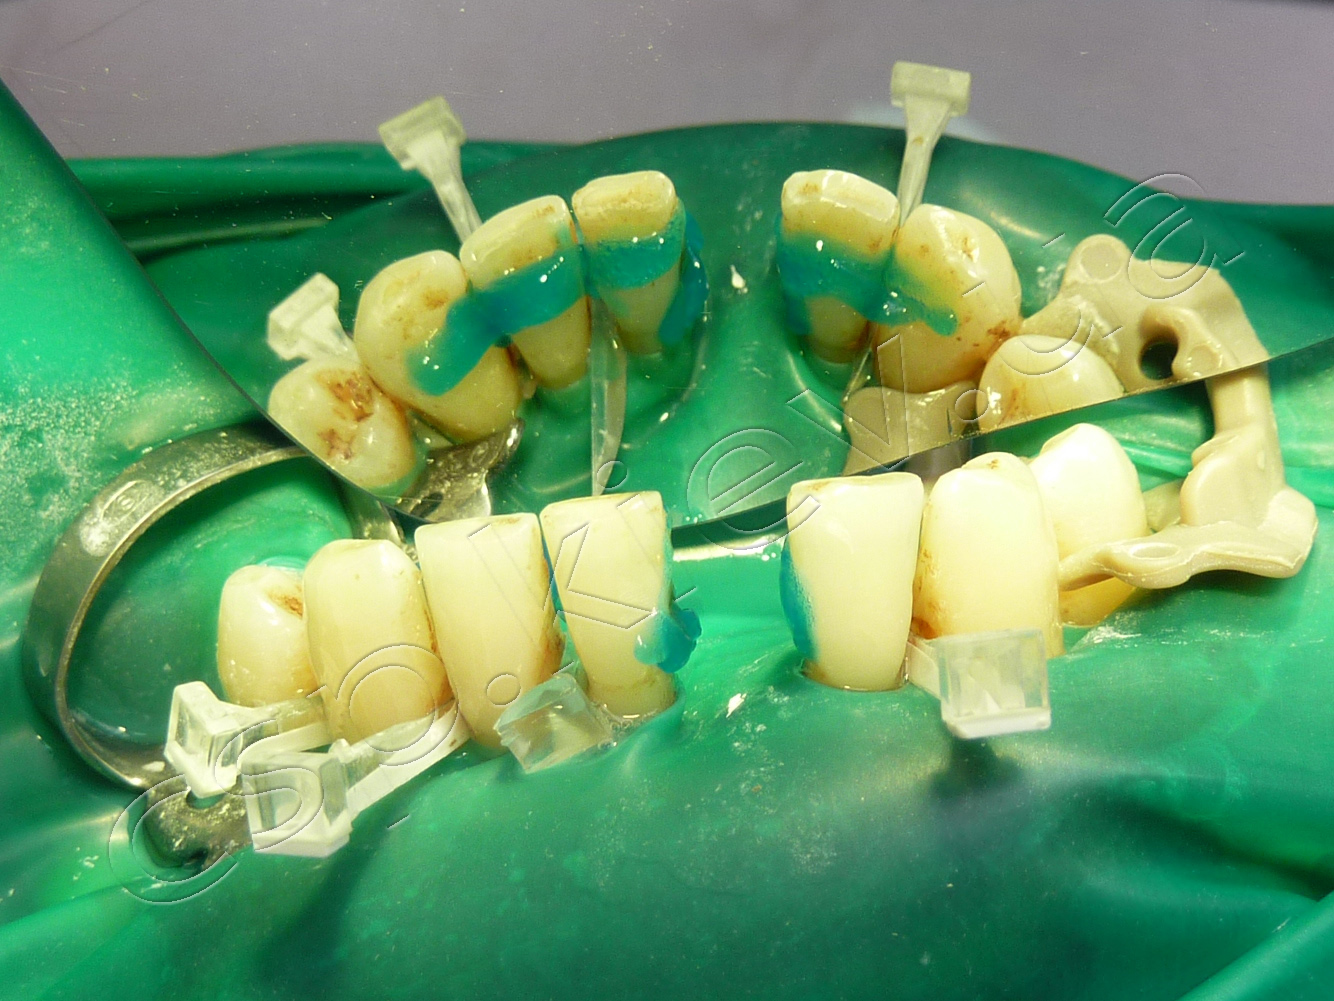 Улучшение гигиены полости рта у пациентов с распространенным пародонтитом при иммобилизации подвижных зубов с использованием армирующих волоконных систем